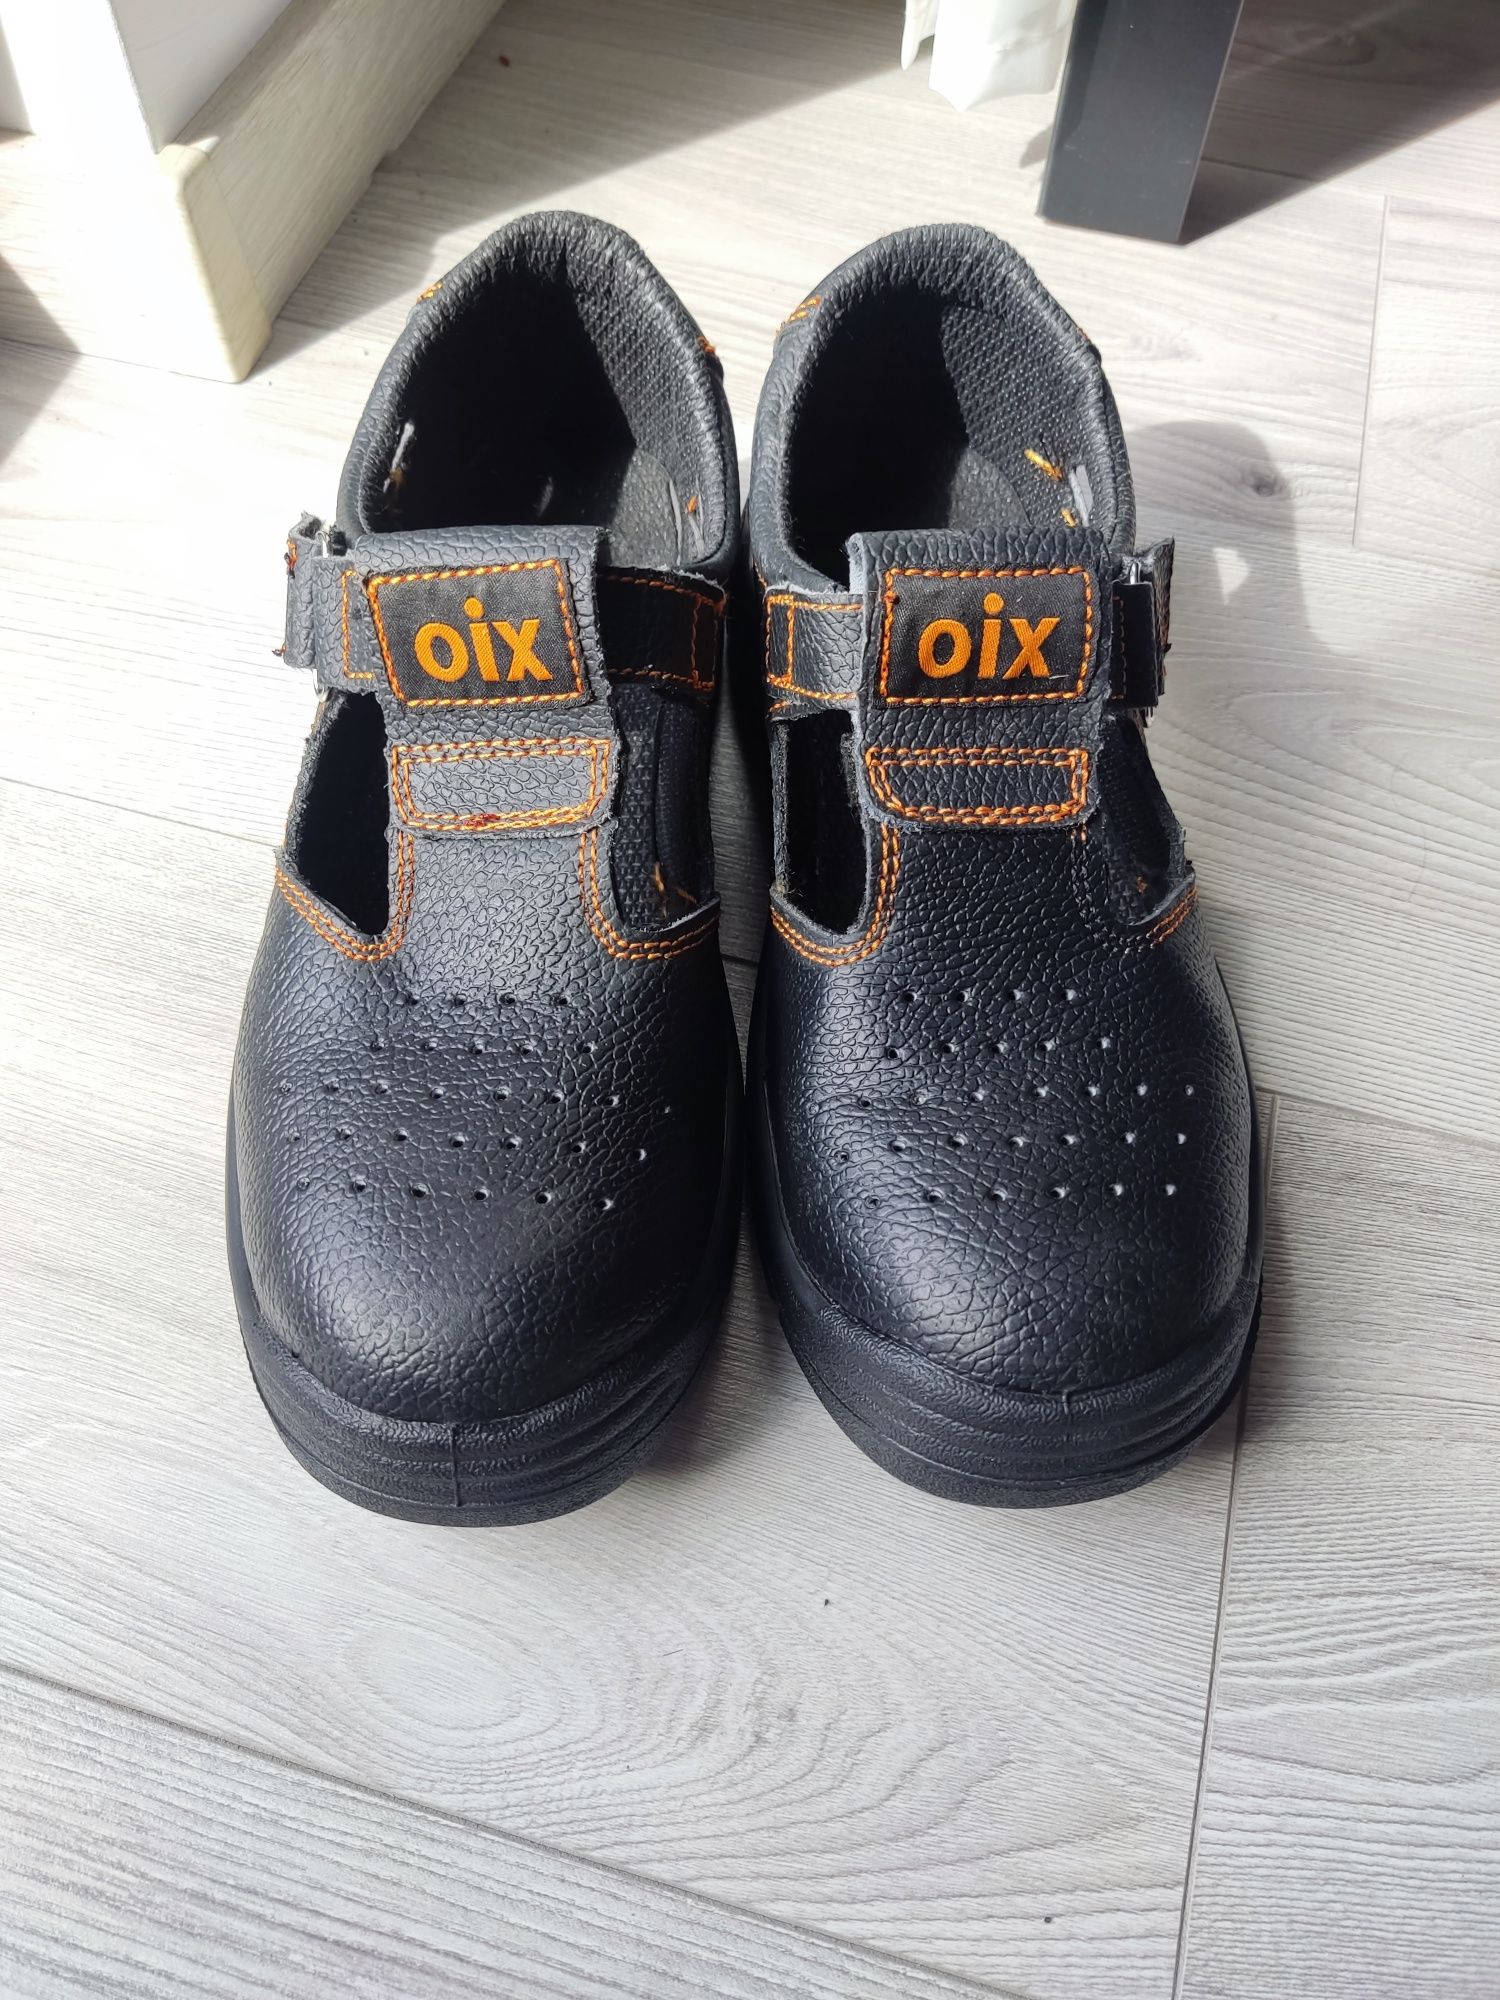 Buty robocze Ogrifox OIX półbuty czarne męskie damskie unisex rozmiar